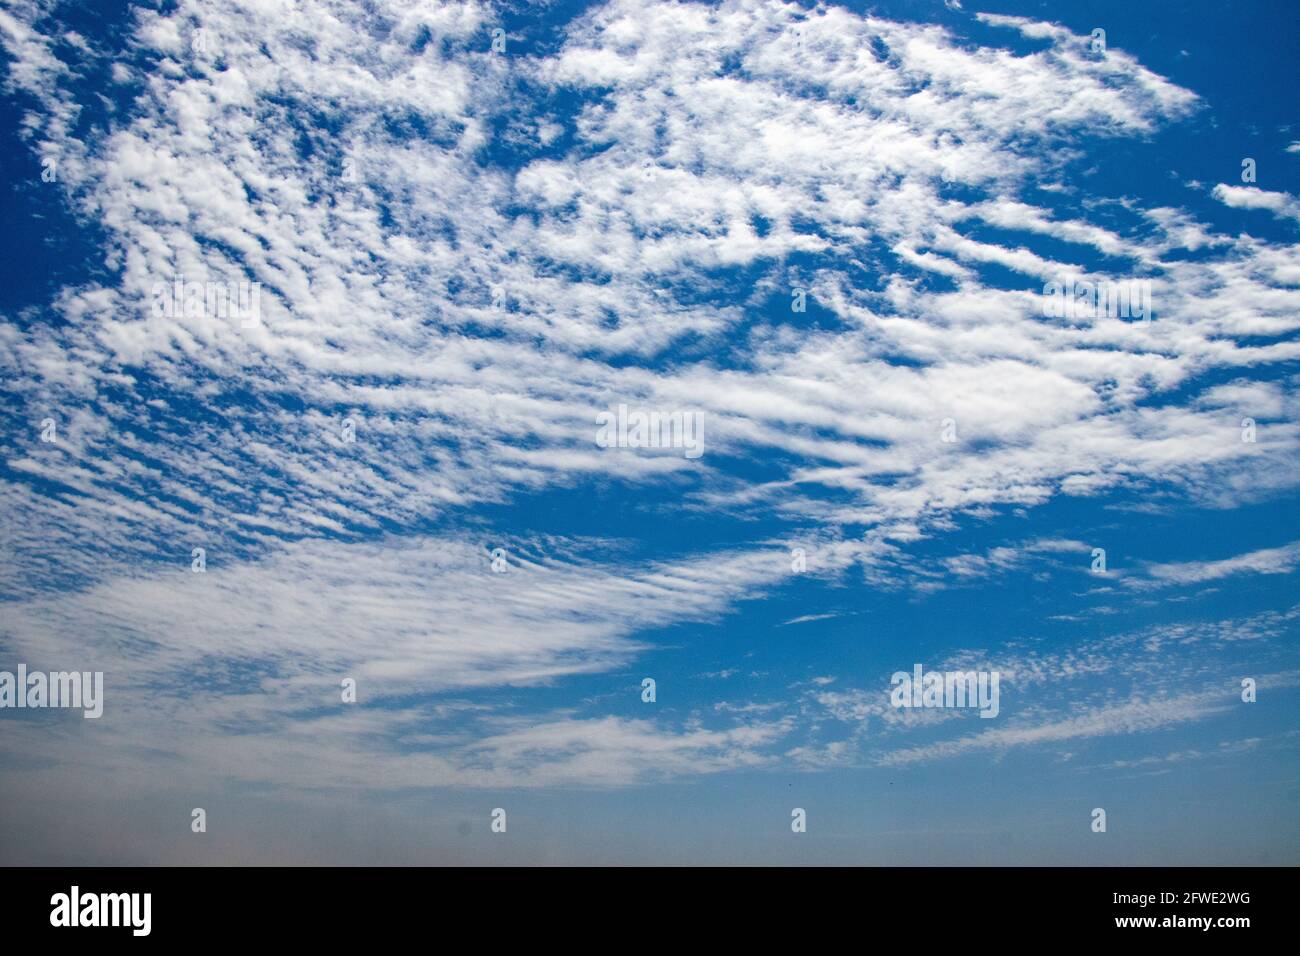 Dramatischer Himmel Hintergrund. Wolken im blauen Himmel. Moody Cloudscape. Panoramabild kann als Webbanner verwendet werden Stockfoto